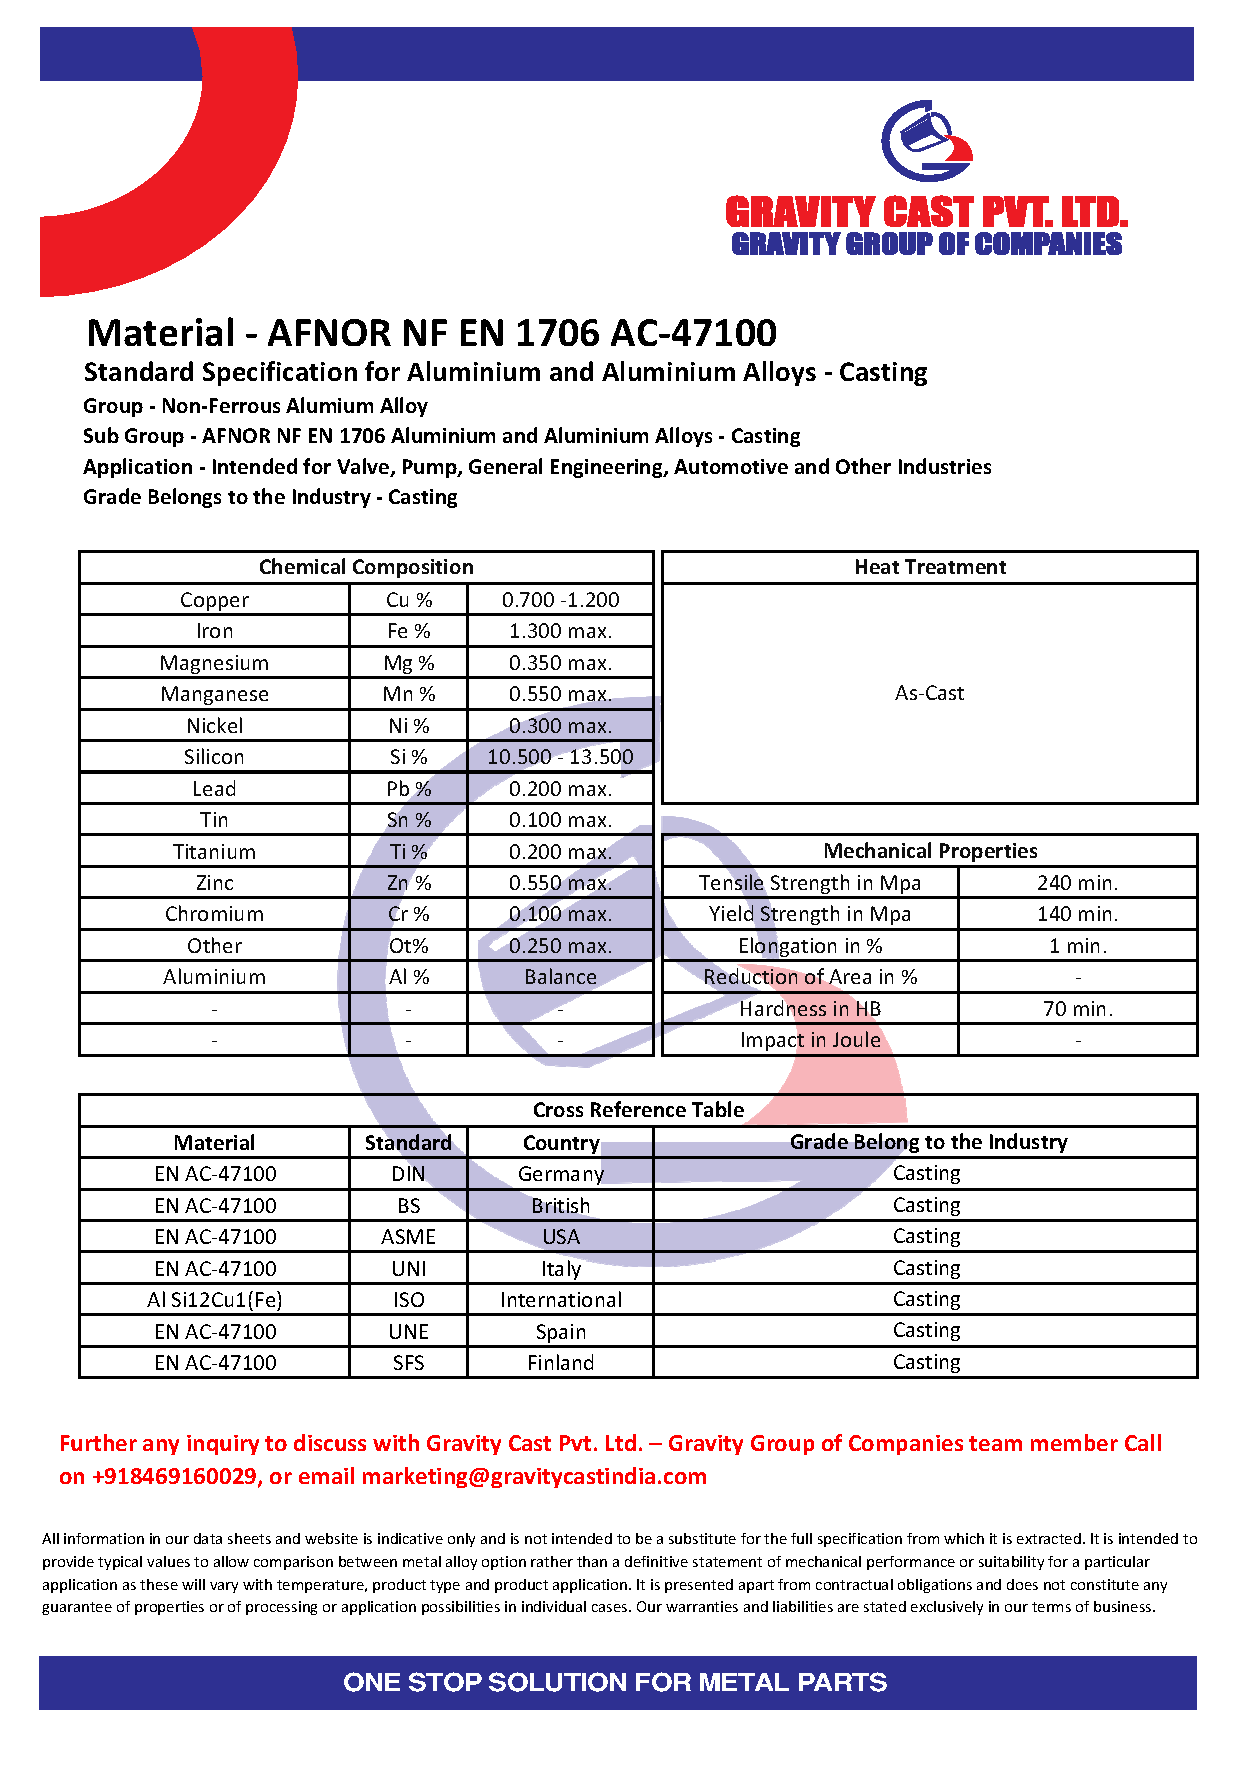 AFNOR NF EN 1706 AC-47100.pdf